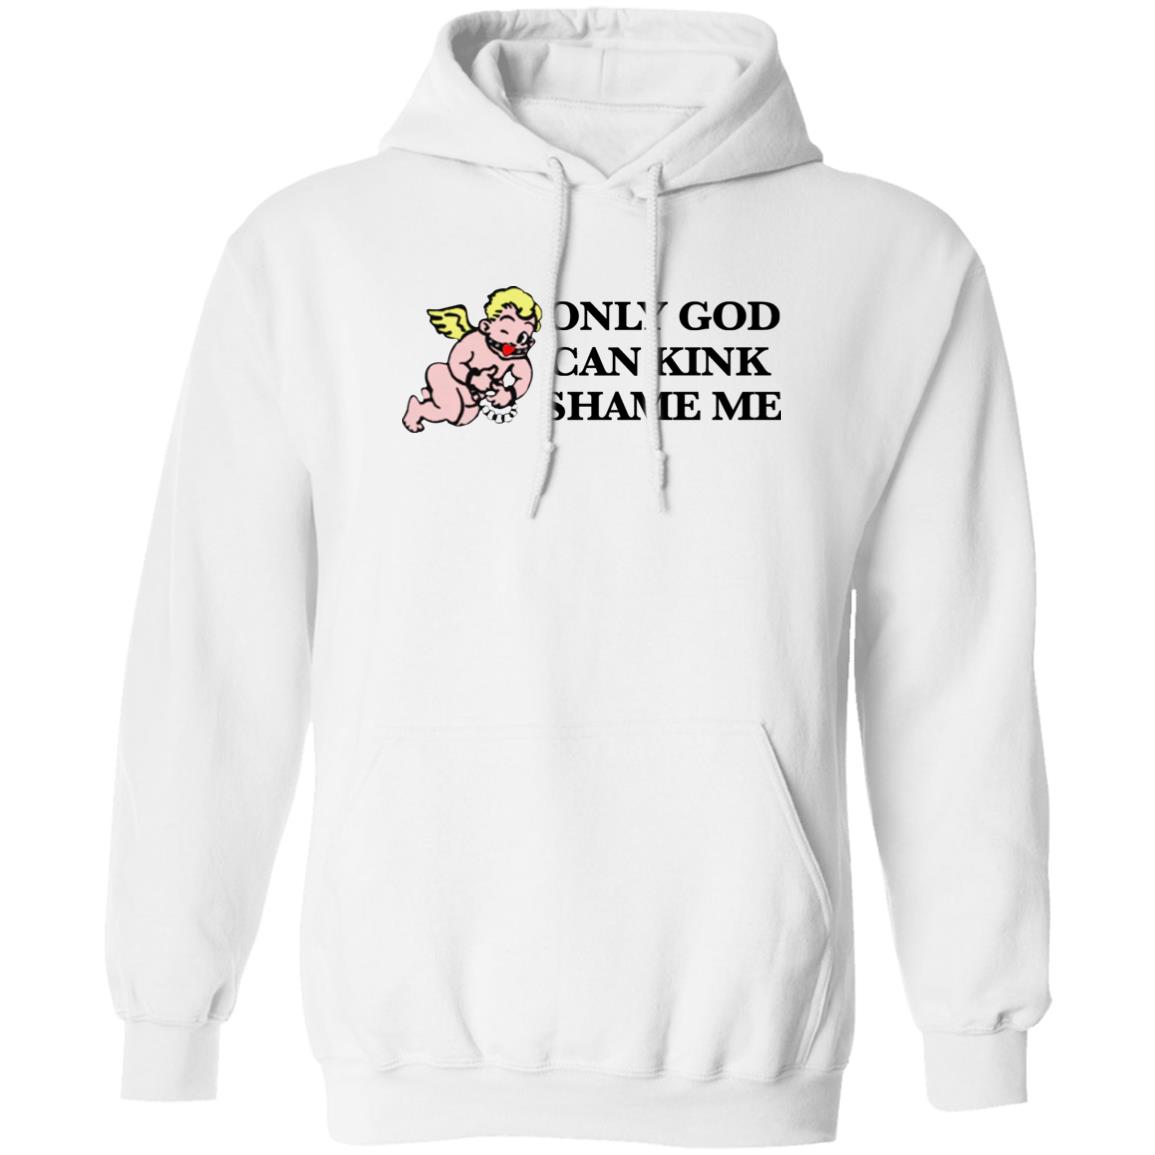 Only God Can Kink Shame Me Shirt 2